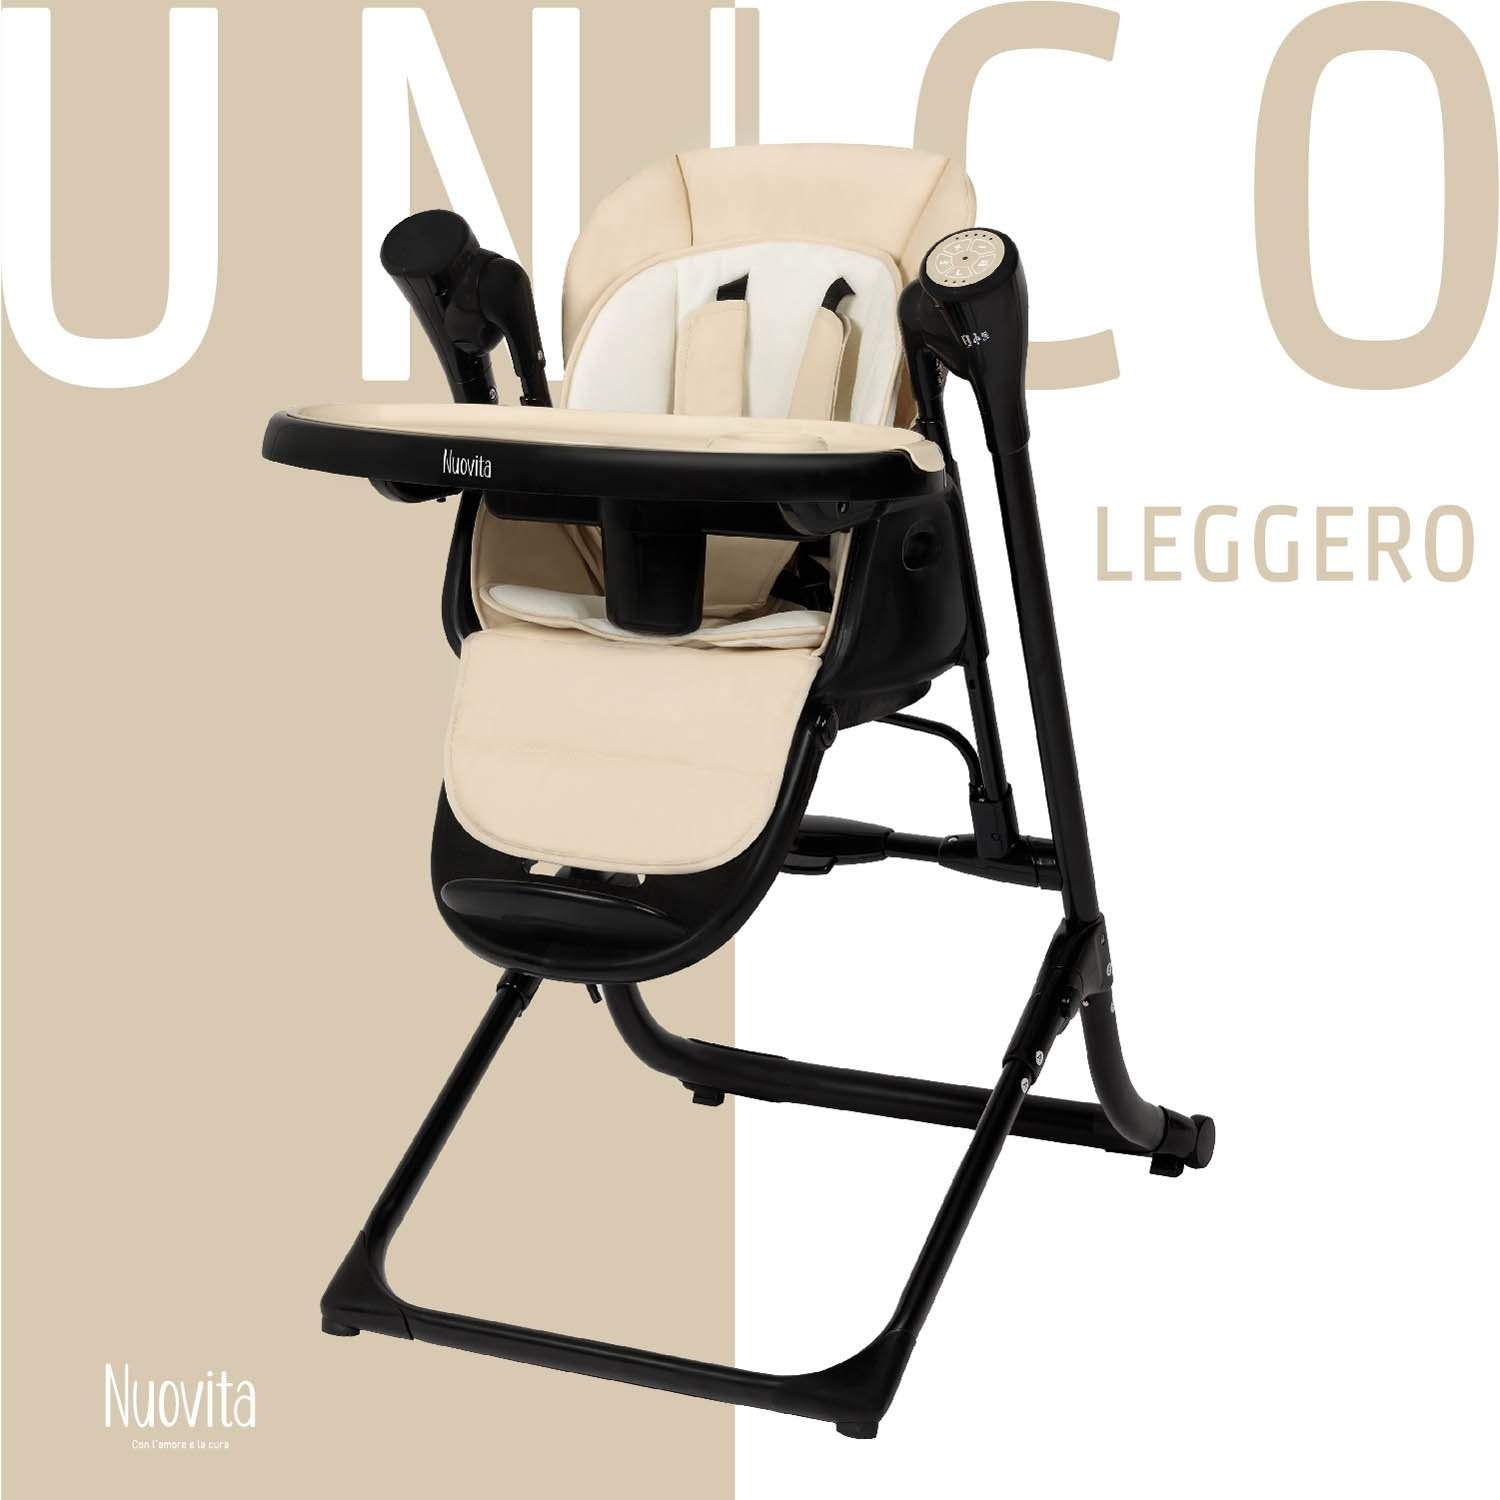 Стульчик для кормления с электронной функцией качения Nuovita Unico Leggero Nero латте стульчик для кормления nuovita с электронной функцией качения unico story